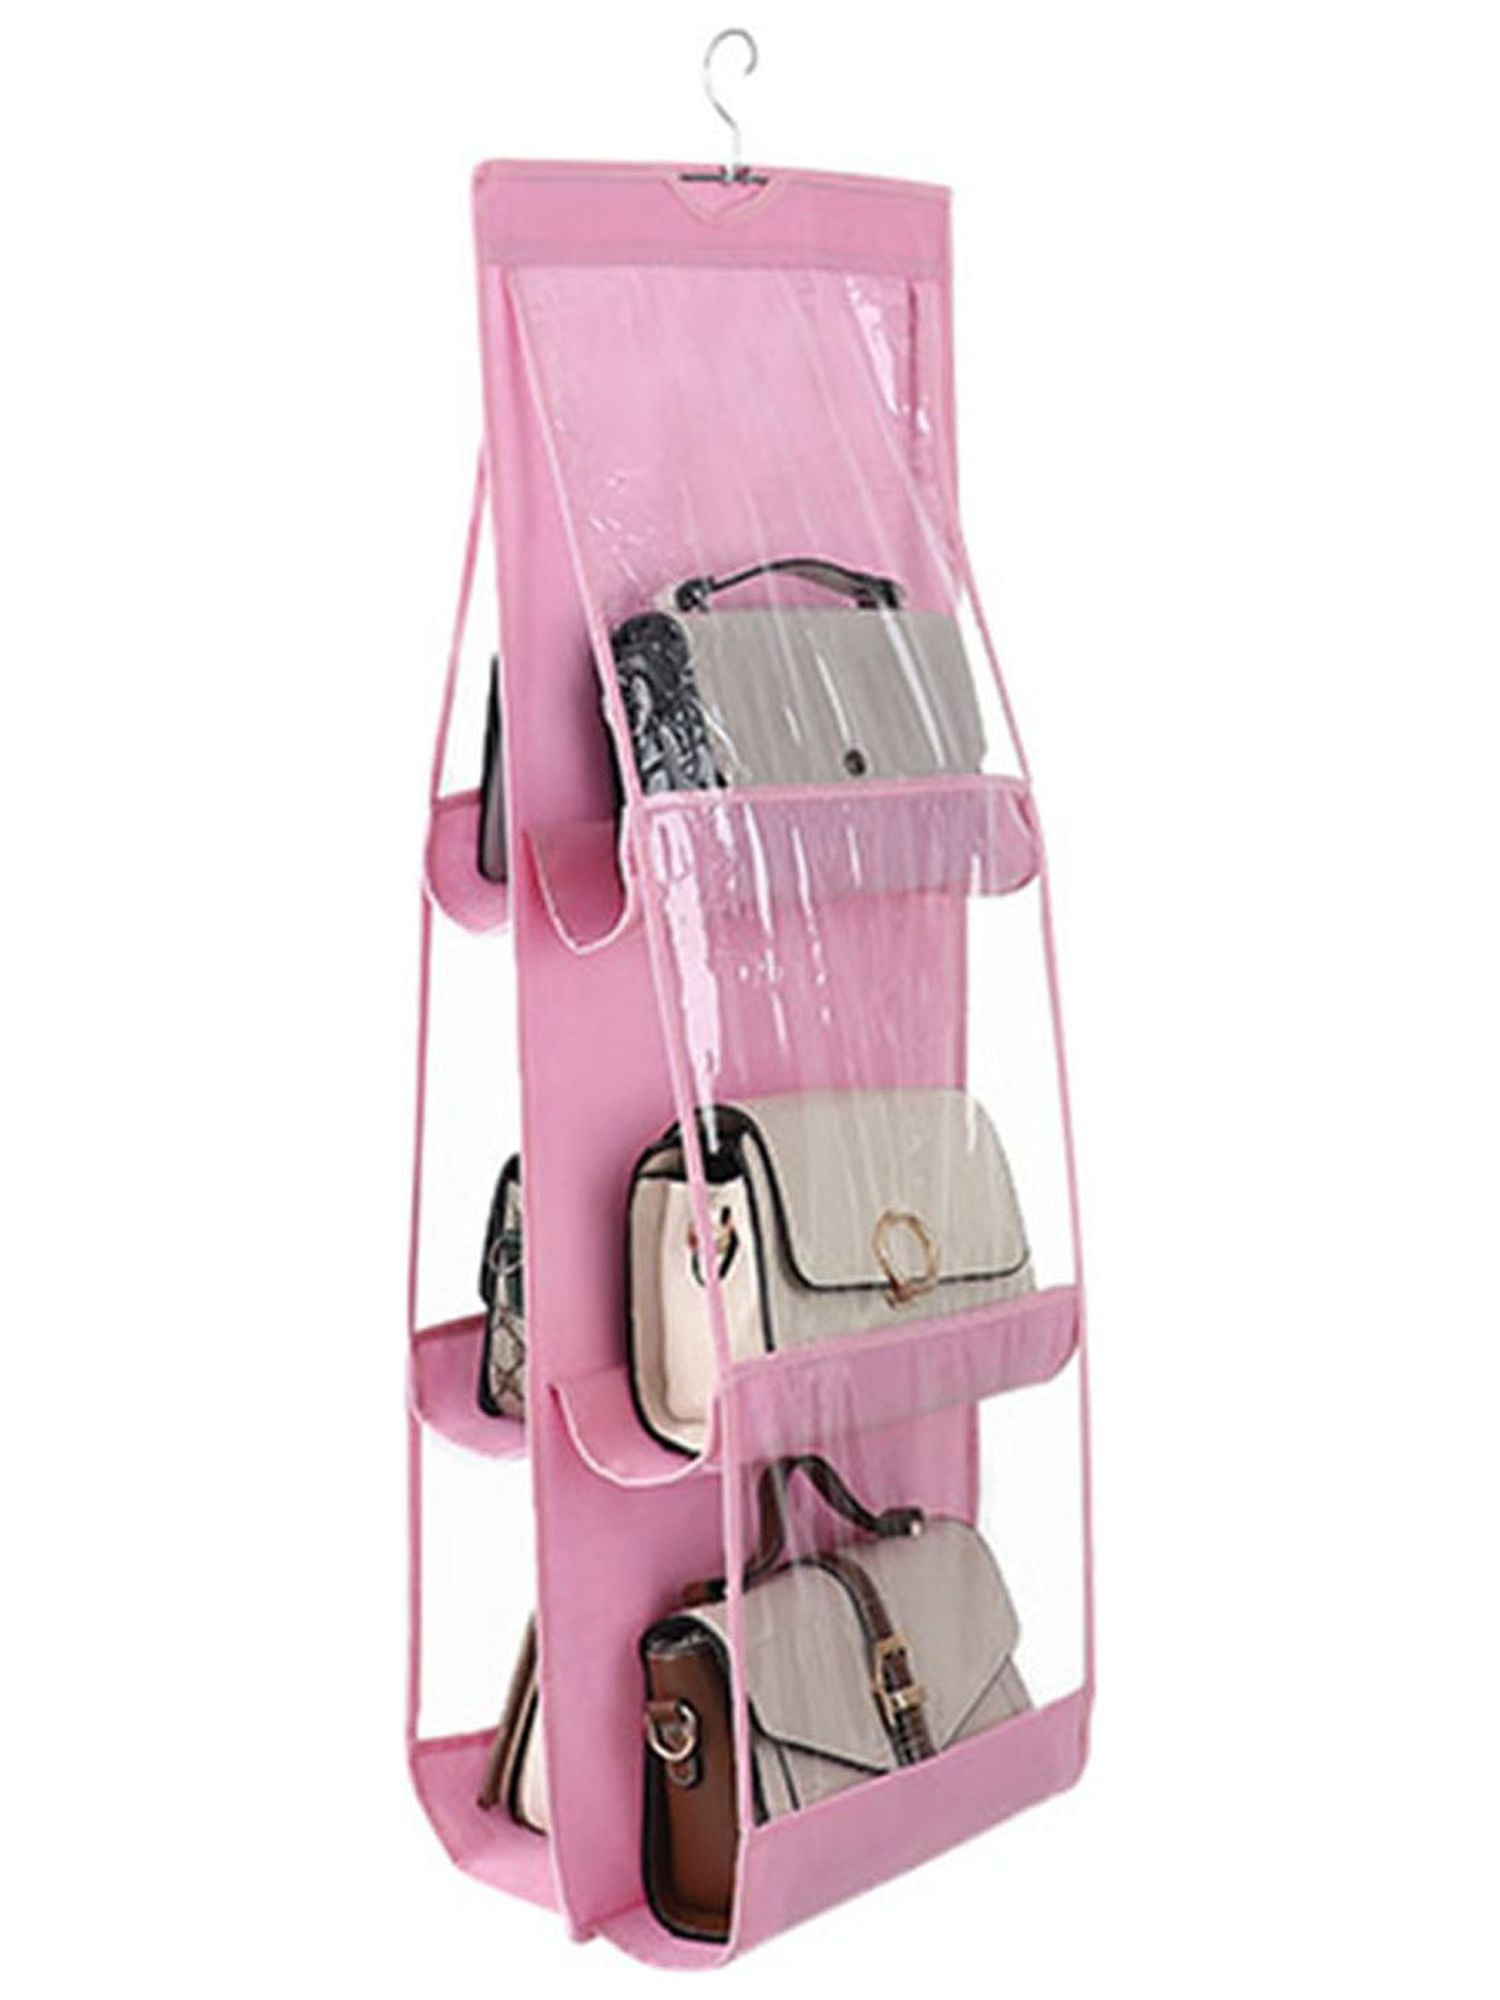 LSFYSZD Hanging Storage Bag 6 8 Pocket Purse Handbag Tote Bag Storage Organizer Hanger Double Sides Hanging Storage Bag Wardrobe Closet f5ef95a4 5f38 44c2 a535 3fef57b71fd1.f3688f6f290c72a4ecd4a0222594d89d